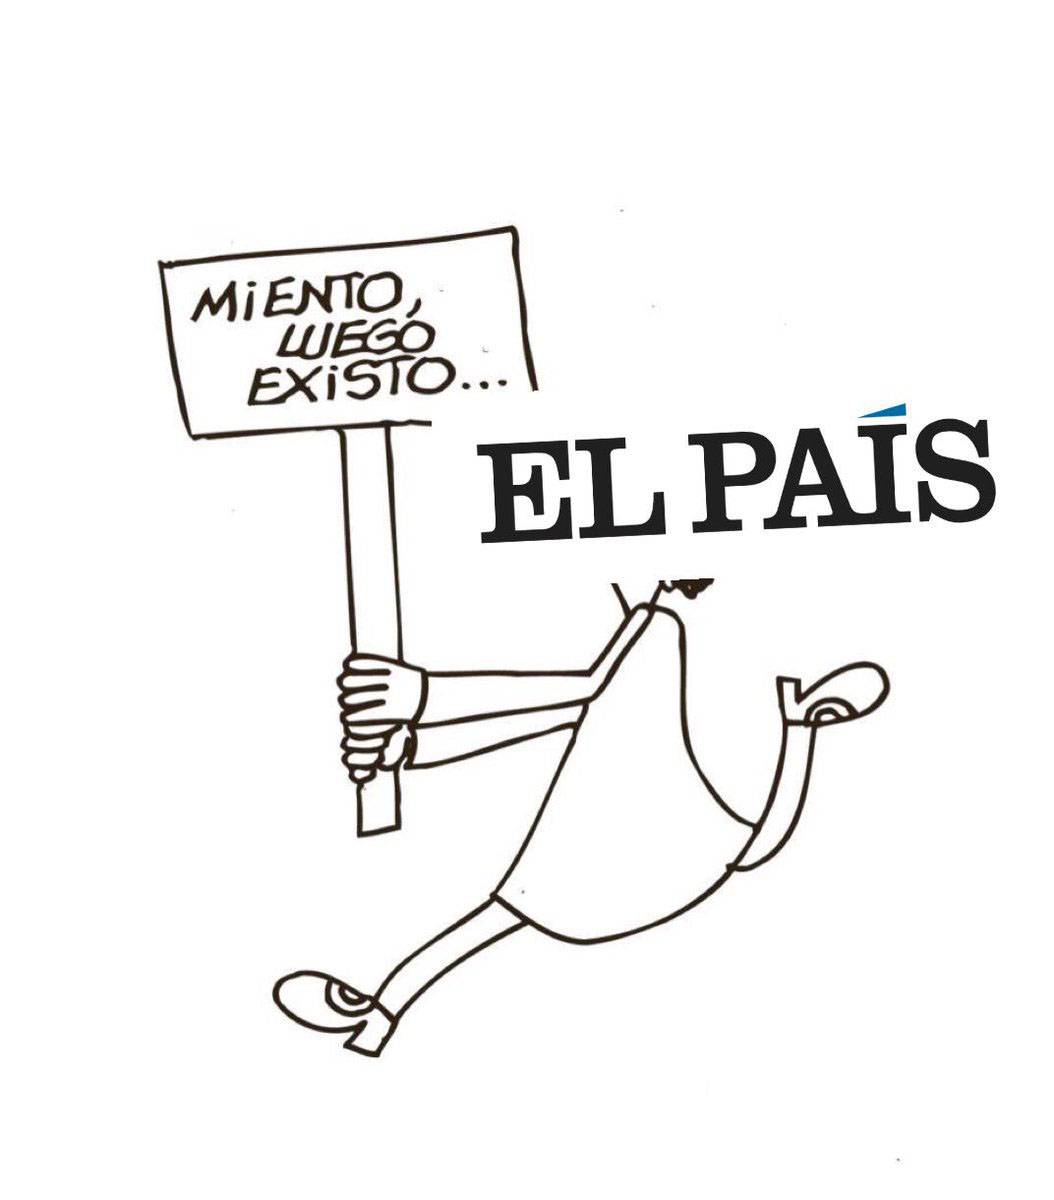 'El País': miento, luego existo